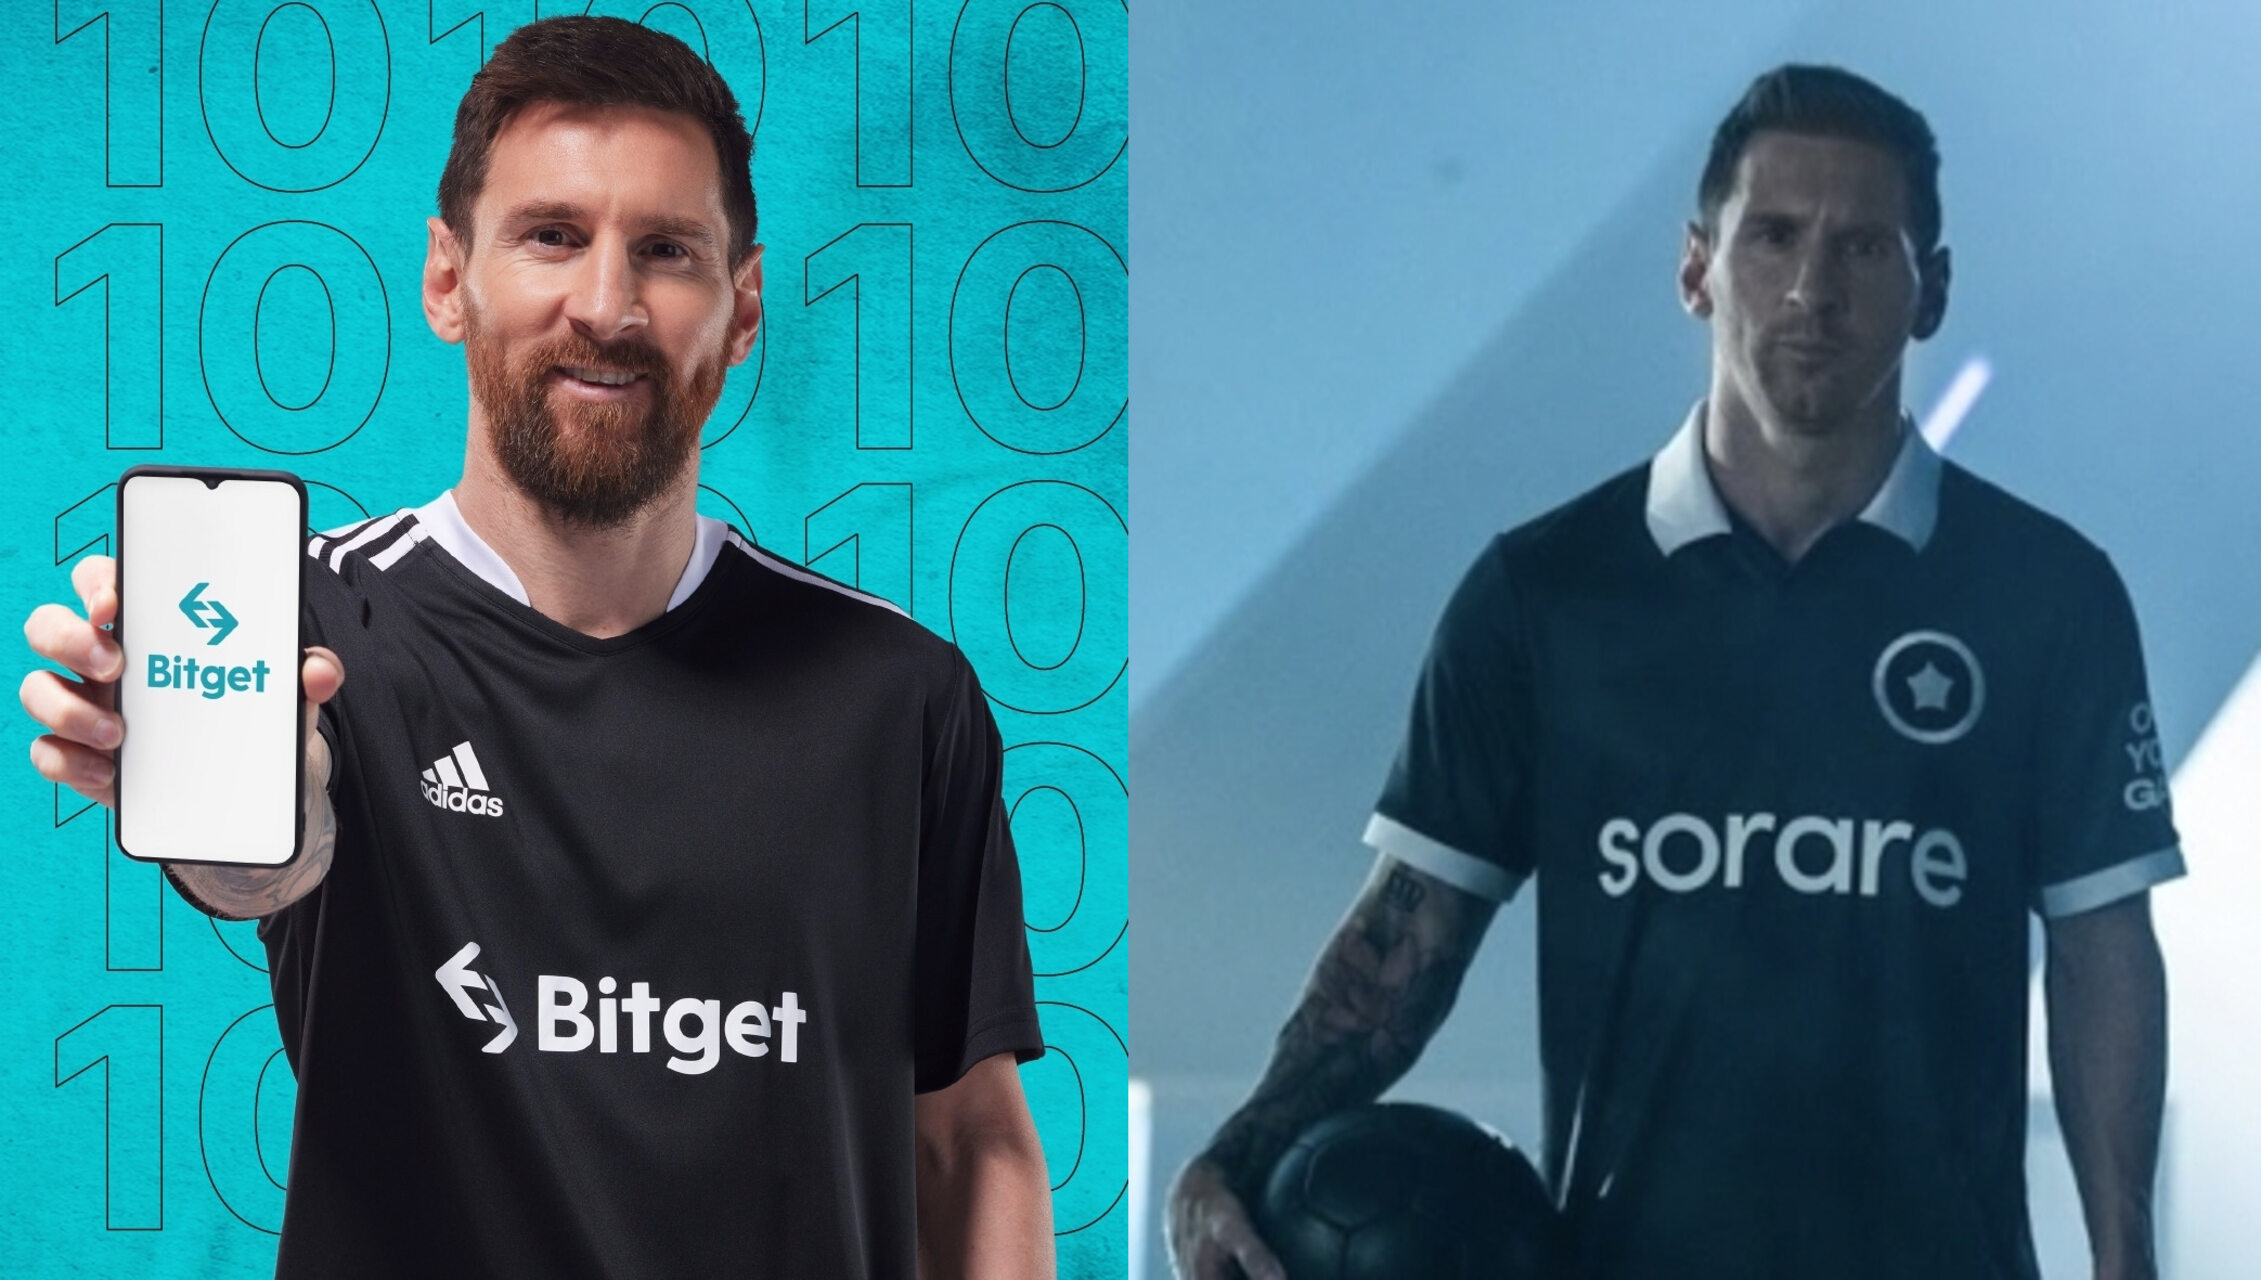 Die strategischen Partnerschaften von Bitget und Sorare mit Lionel Messi